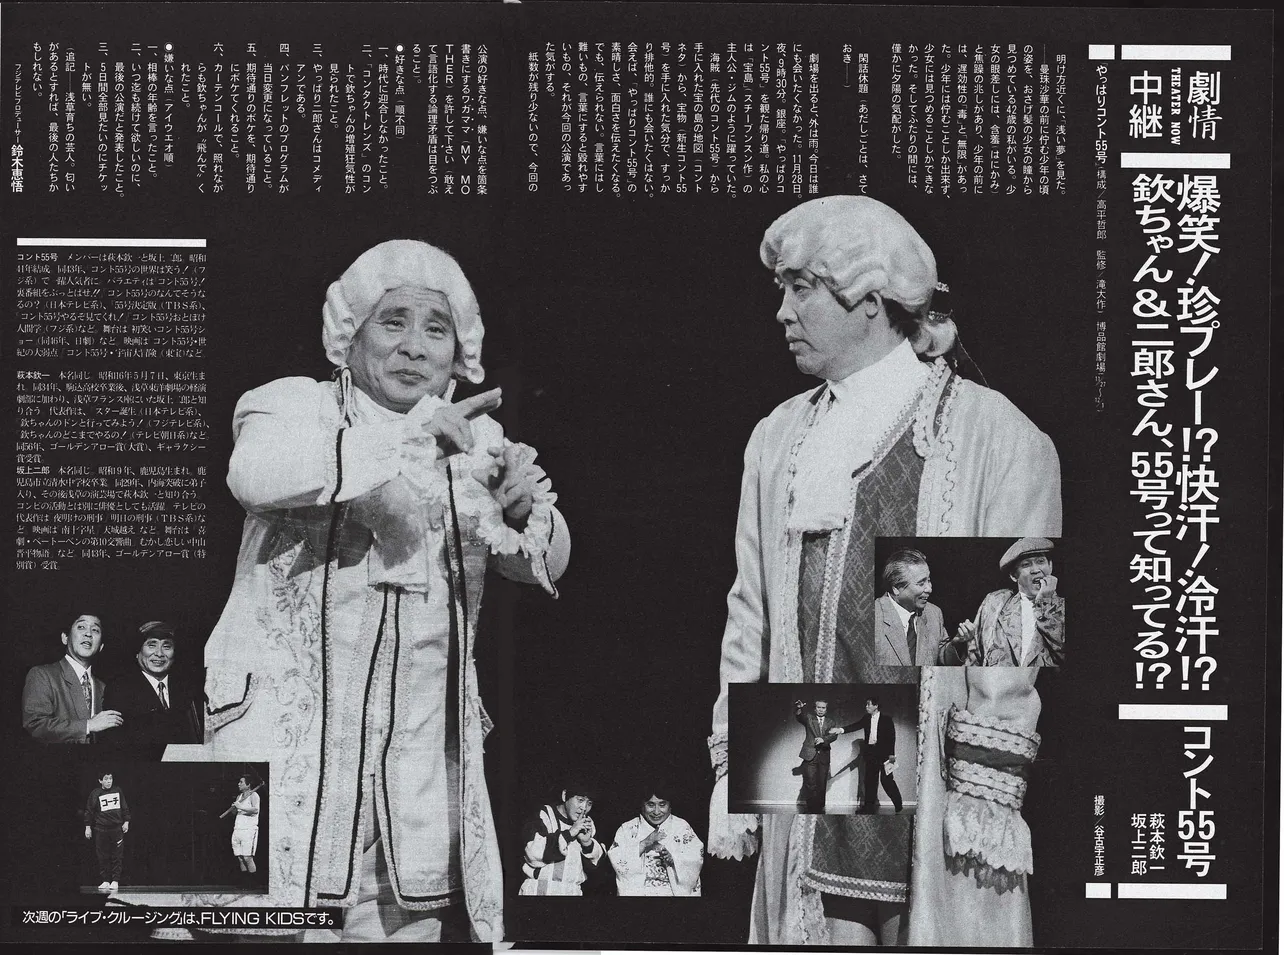 “最後の公演”と発表された「やっぱりコント55号」（'91年、銀座・博品館劇場）に密着